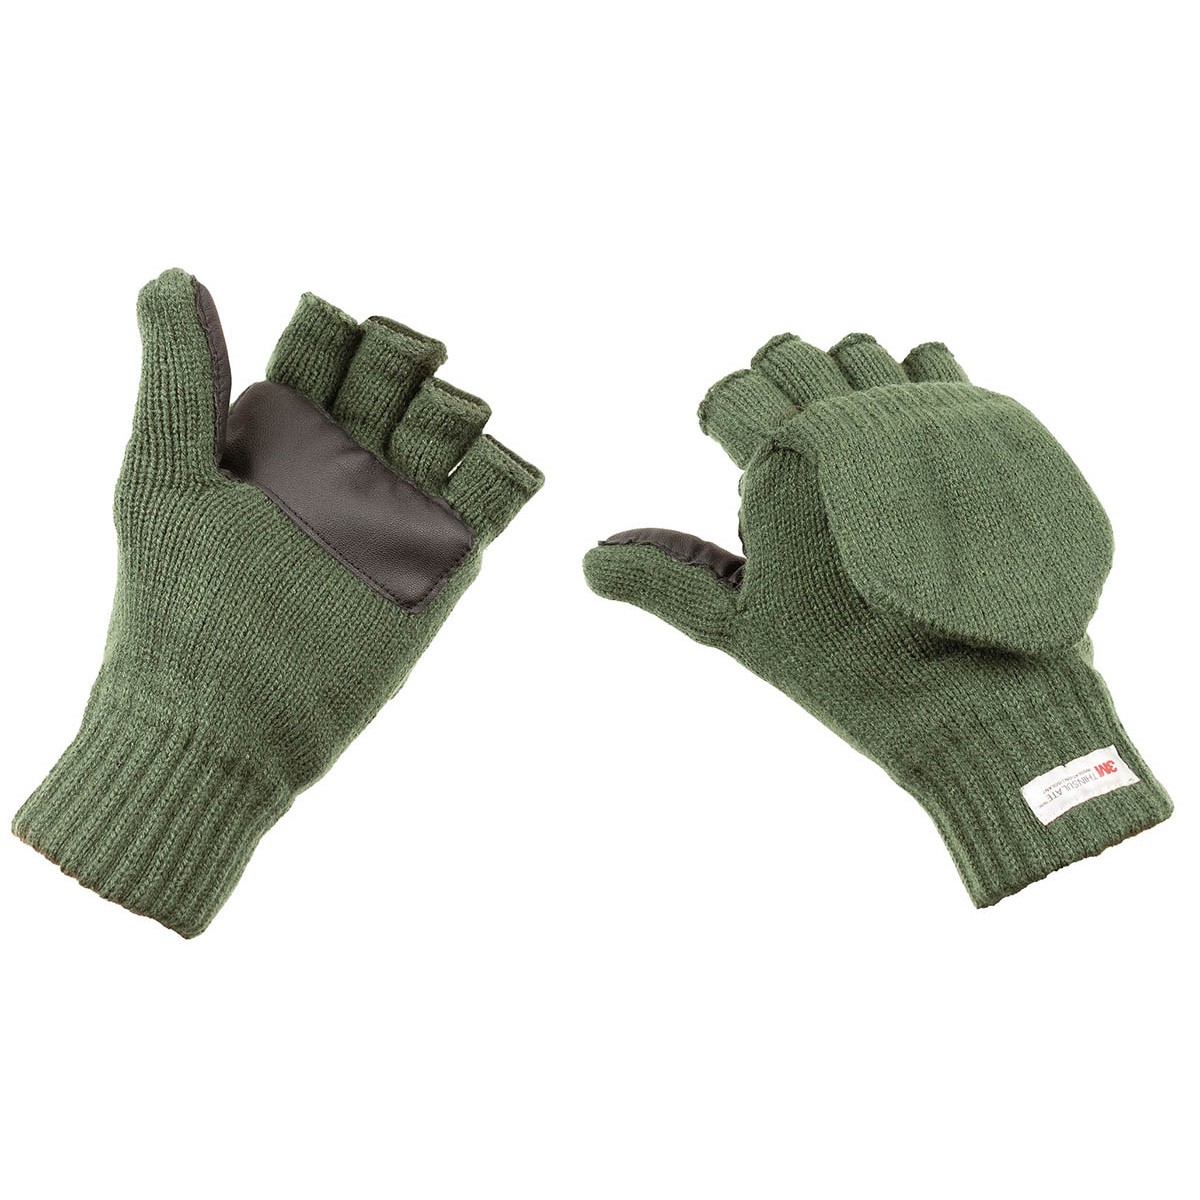 Pletené rukavice bez prstů s podšívkou MFH Thinsulate - olivové, L